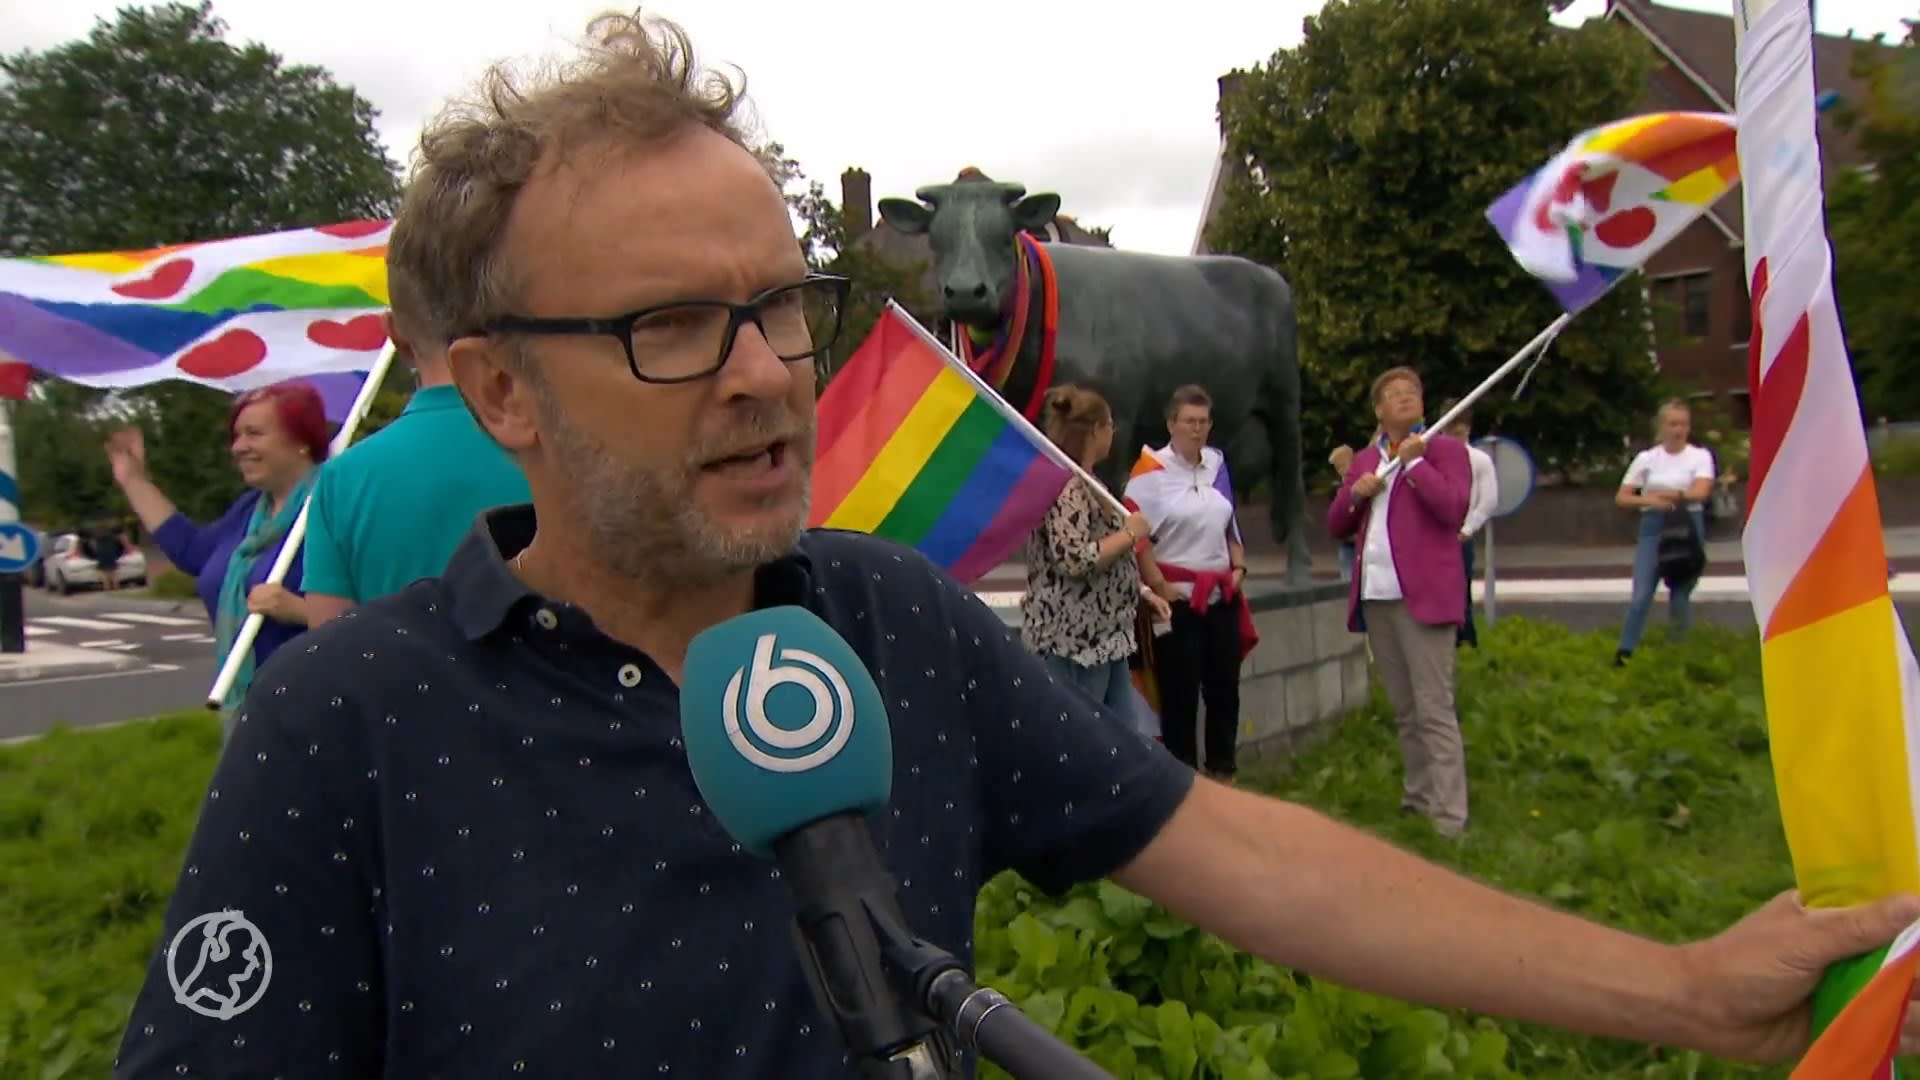 Friese ouders van lhbti-ers hijsen regenboogvlaggen voor acceptatie